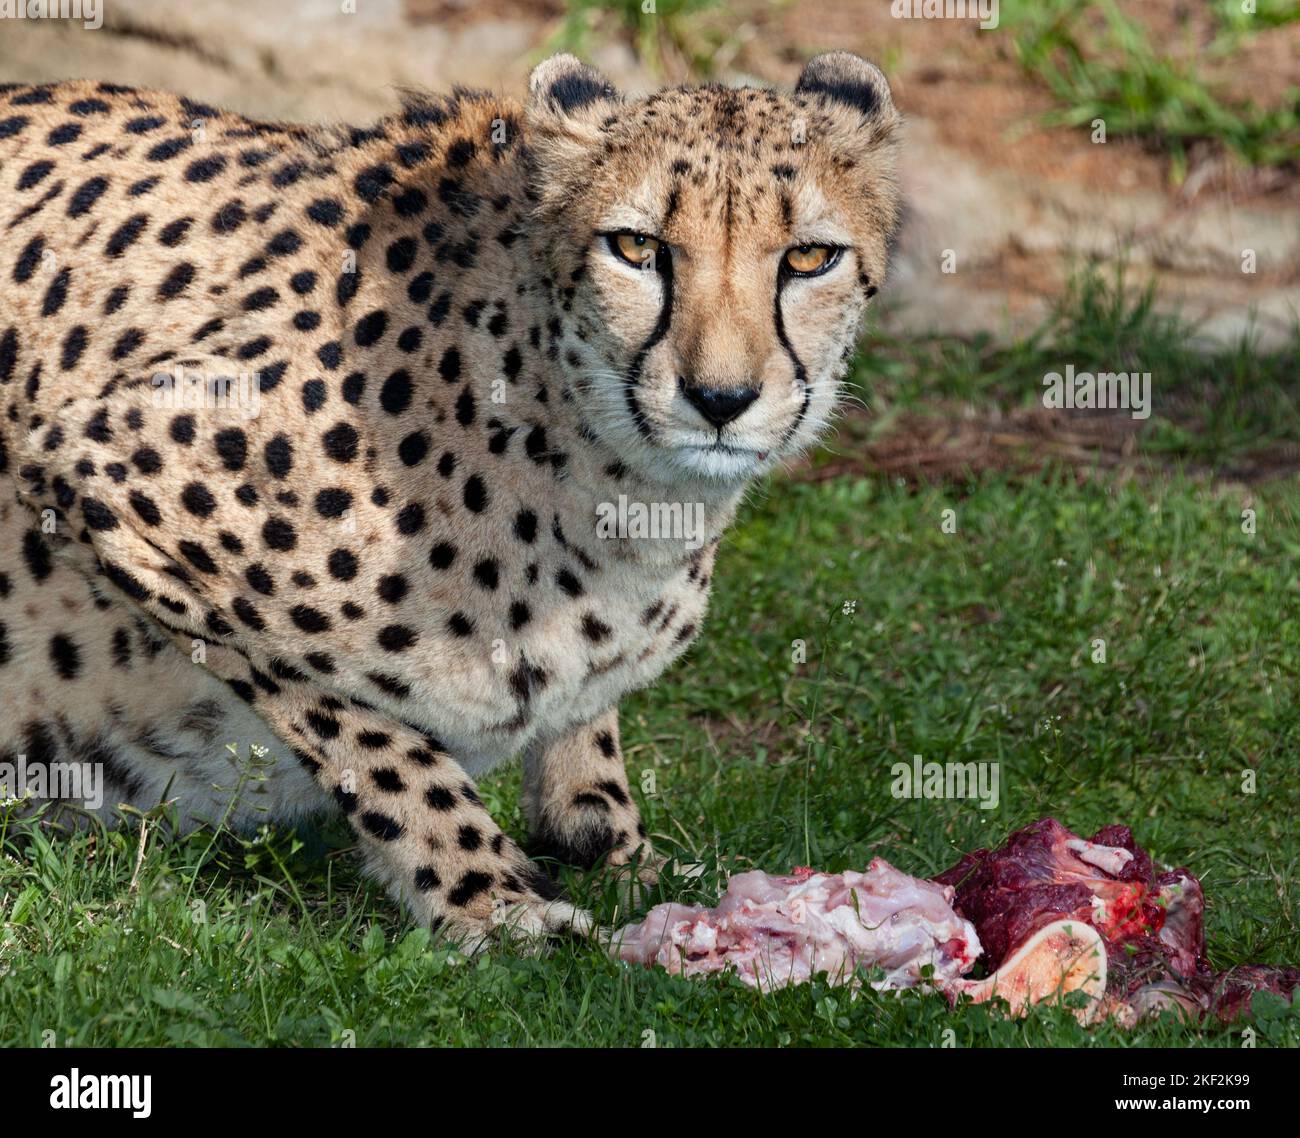 Die Gepard ist eine große Katze, die in Afrika und im zentralen Iran beheimatet ist. Es ist das schnellste Landtier, das schätzungsweise 80 bis 128 km/h laufen kann Stockfoto